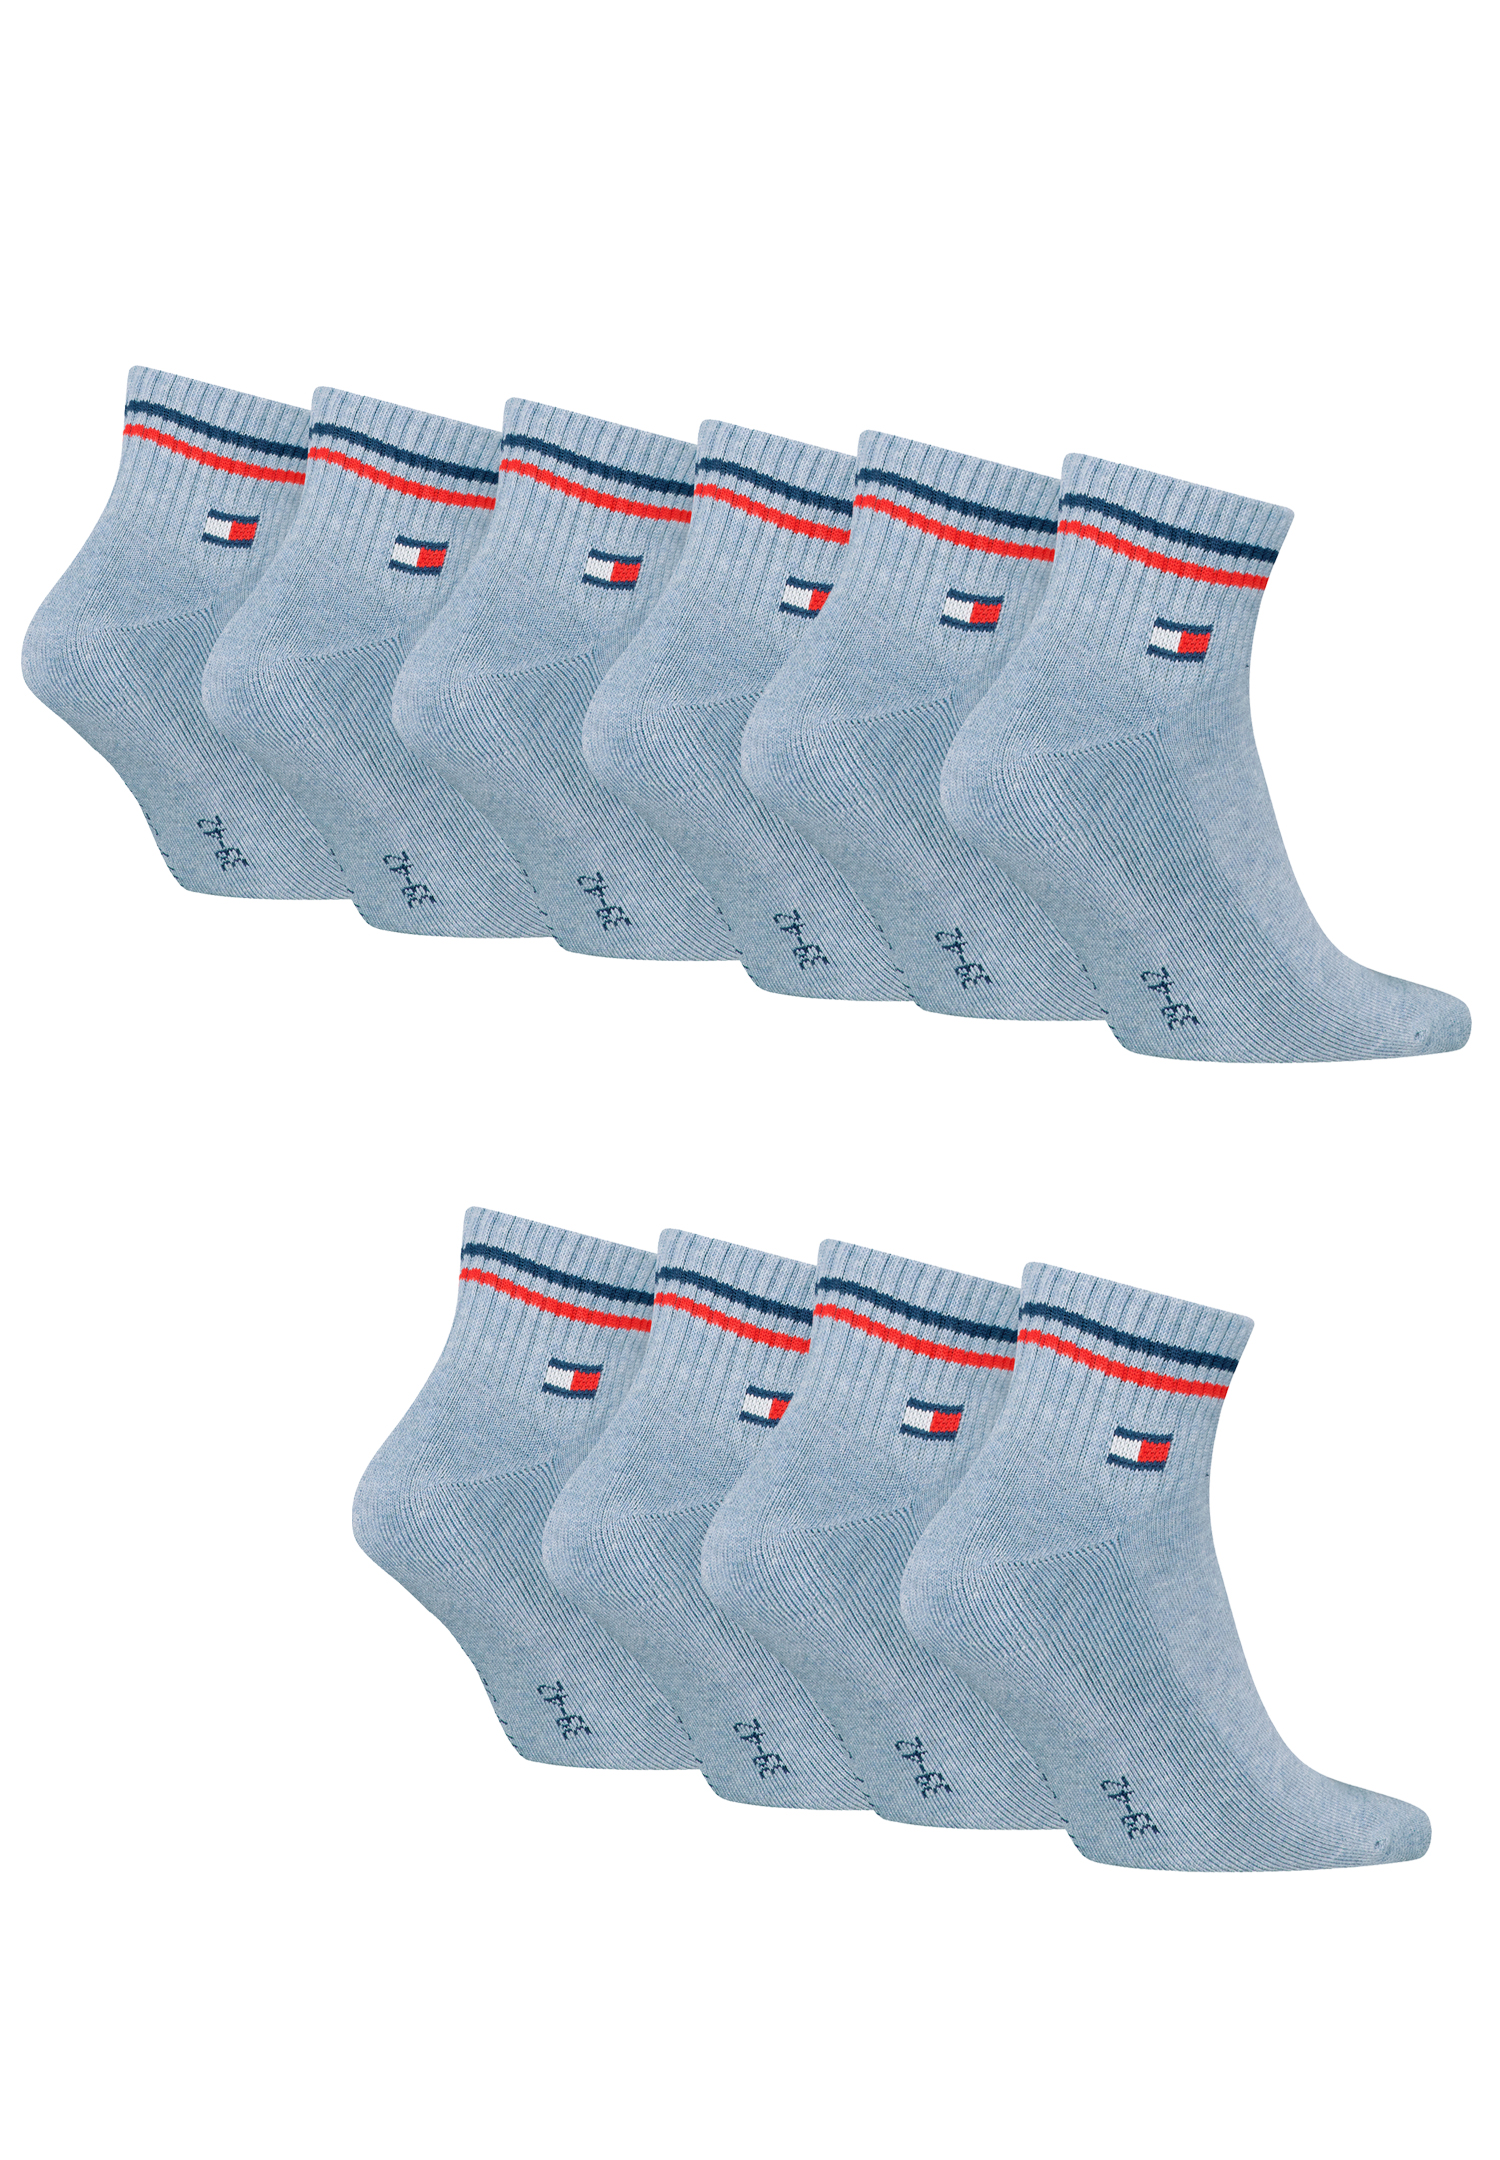 Tommy Hilfiger Unisex Quarter Socken im Retro Design knöchelhoch 10-er Pack